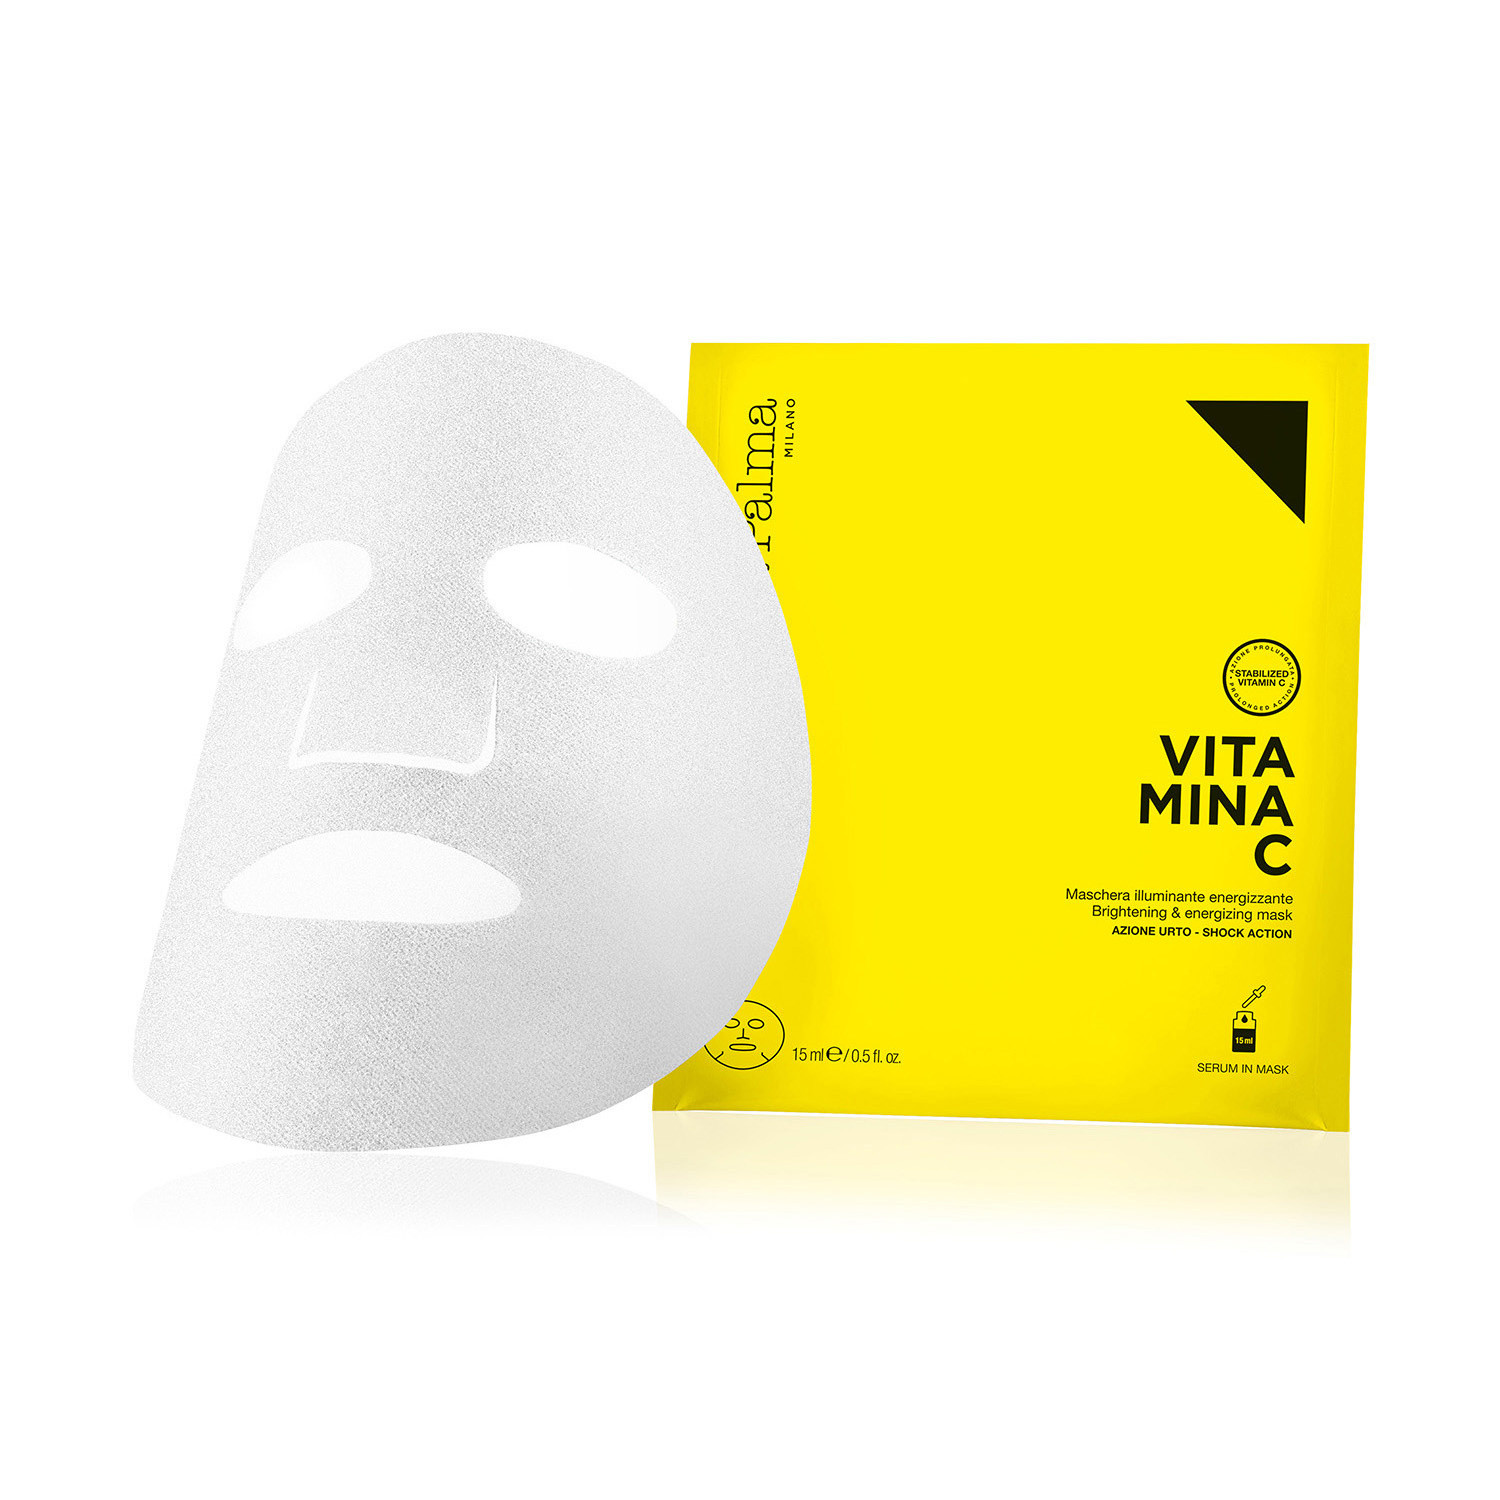 VITAMINA C - Superheroes Mask Maschera Illuminante Energizzante, Giallo, large image number 0